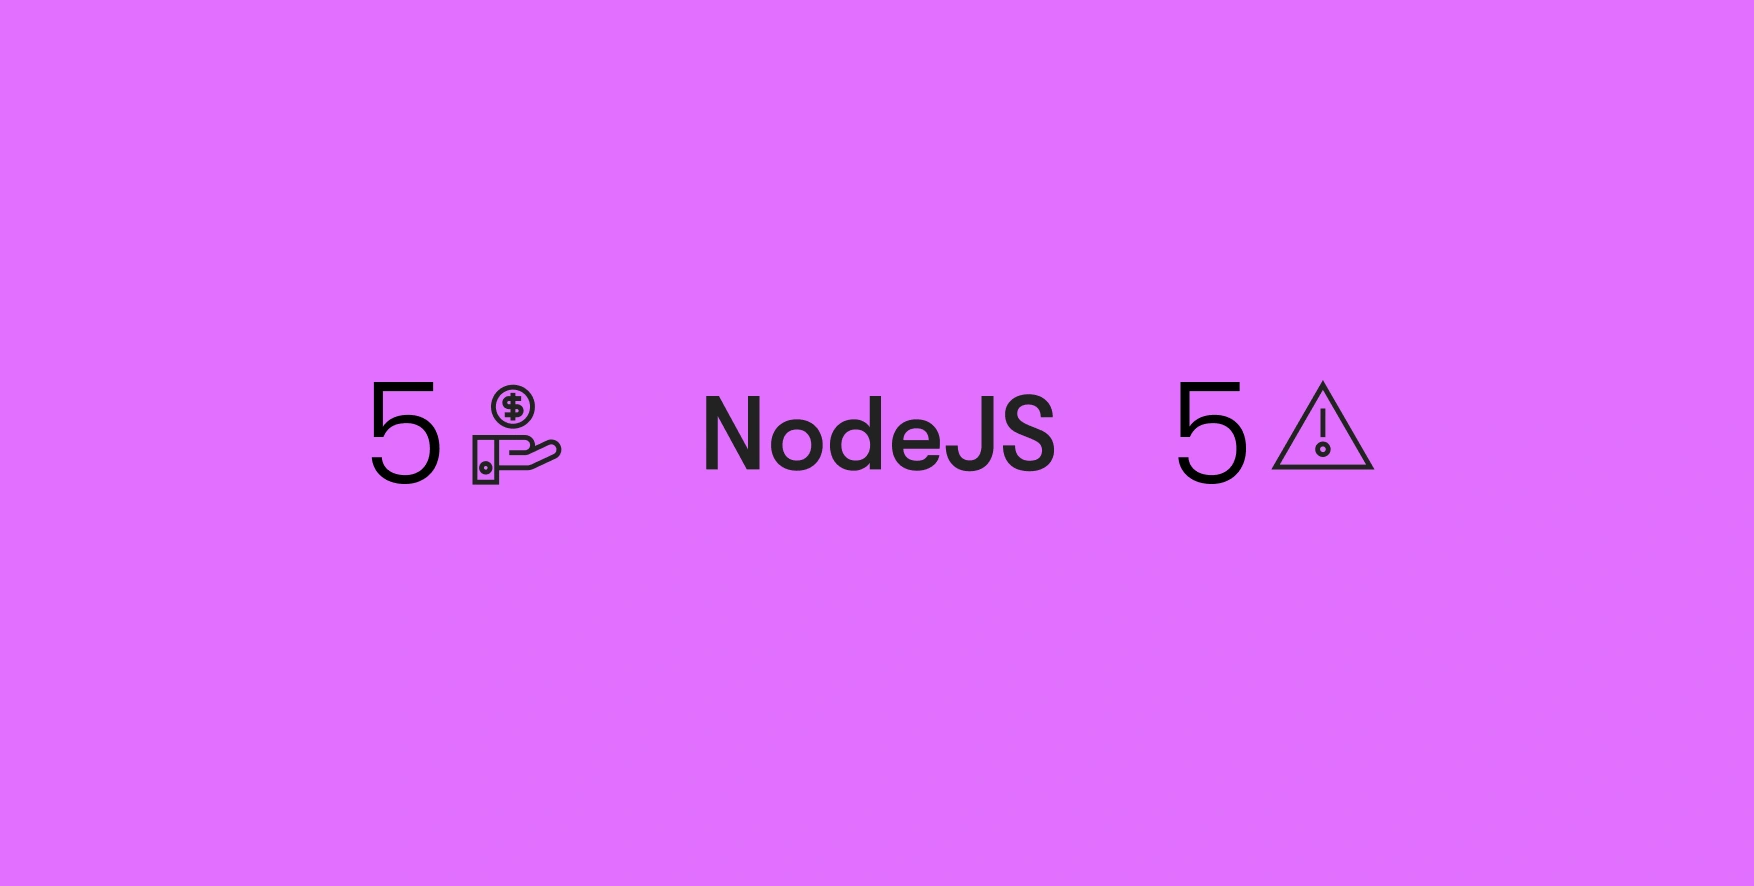 NodeJS on purple background